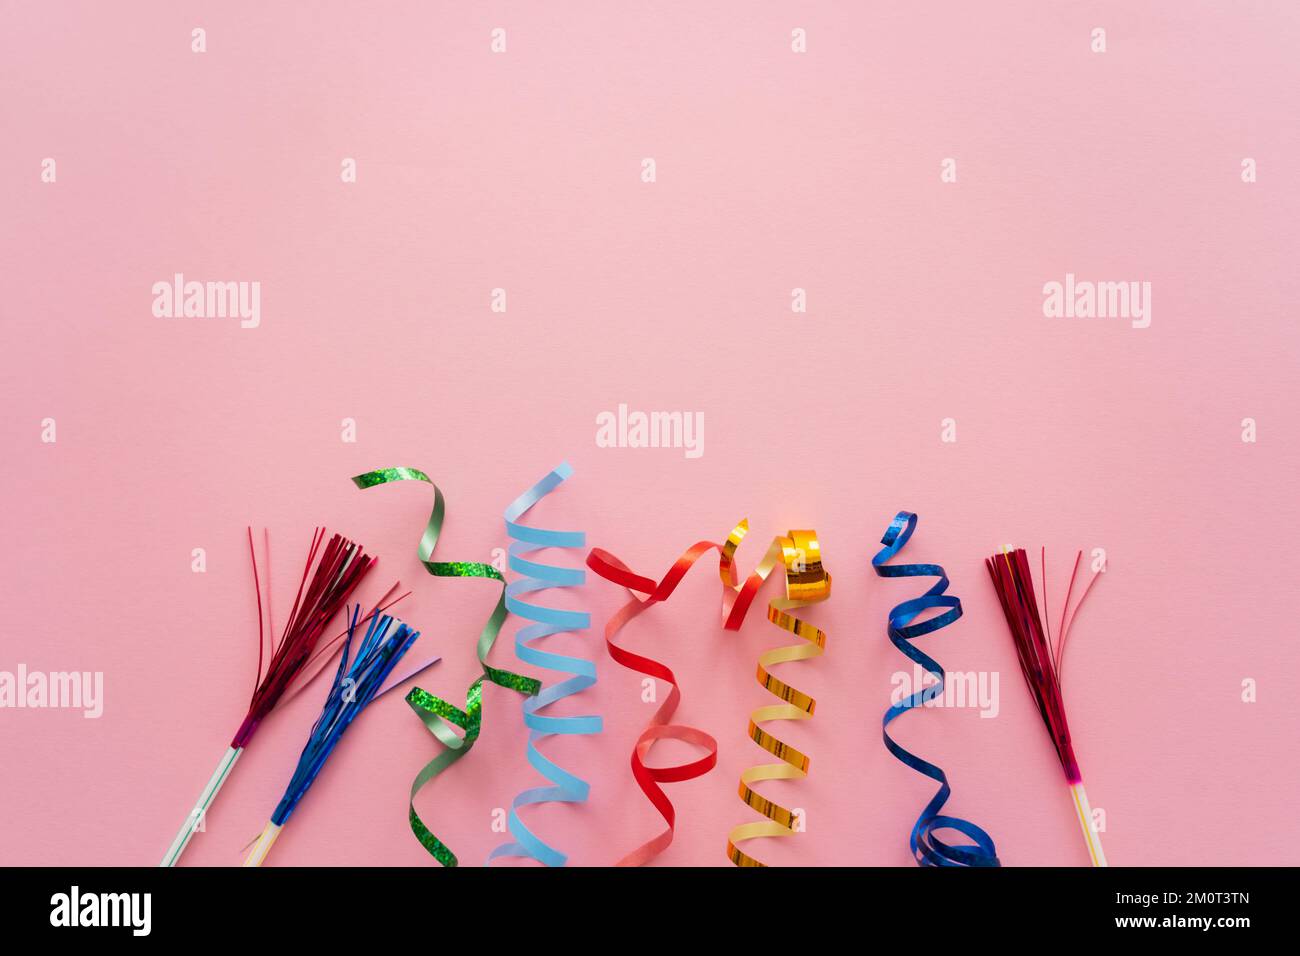 Draufsicht von Schlangenhaut und Trinkhalmen mit Lametta auf rosa Hintergrund, Stockbild Stockfoto